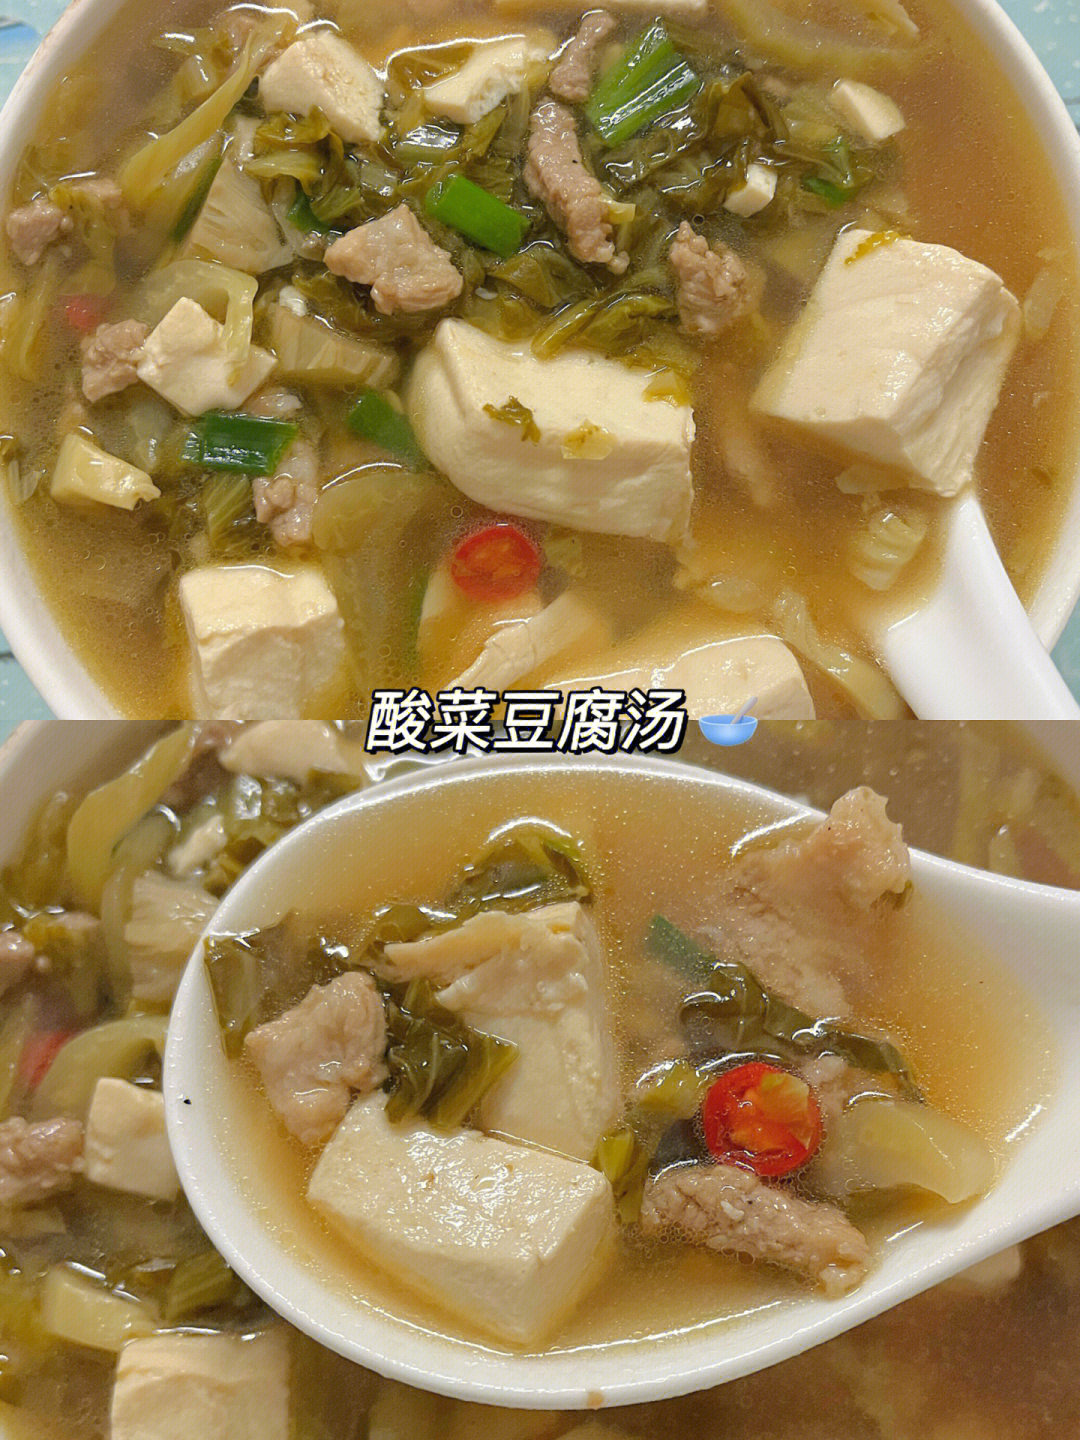 97喝上1碗热汤整个人都暖和了所需食材:酸菜 豆腐 蒜 小米辣 葱花